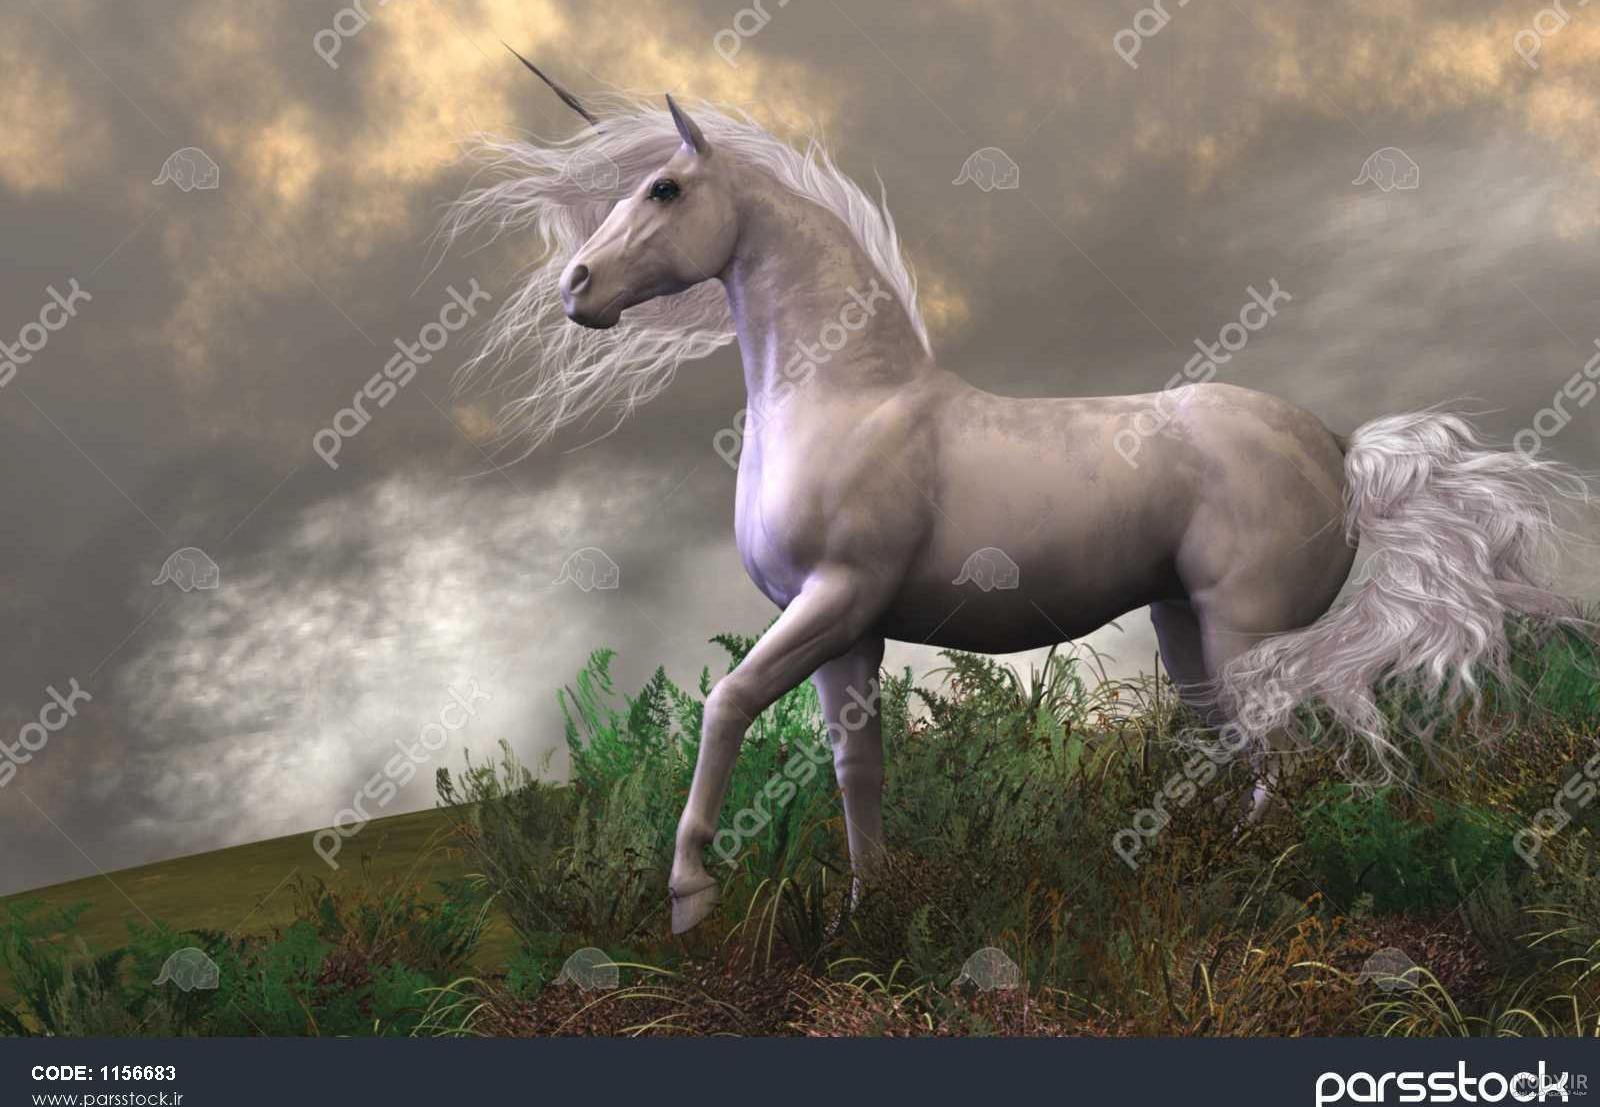 زیباترین اسب سفید دنیا